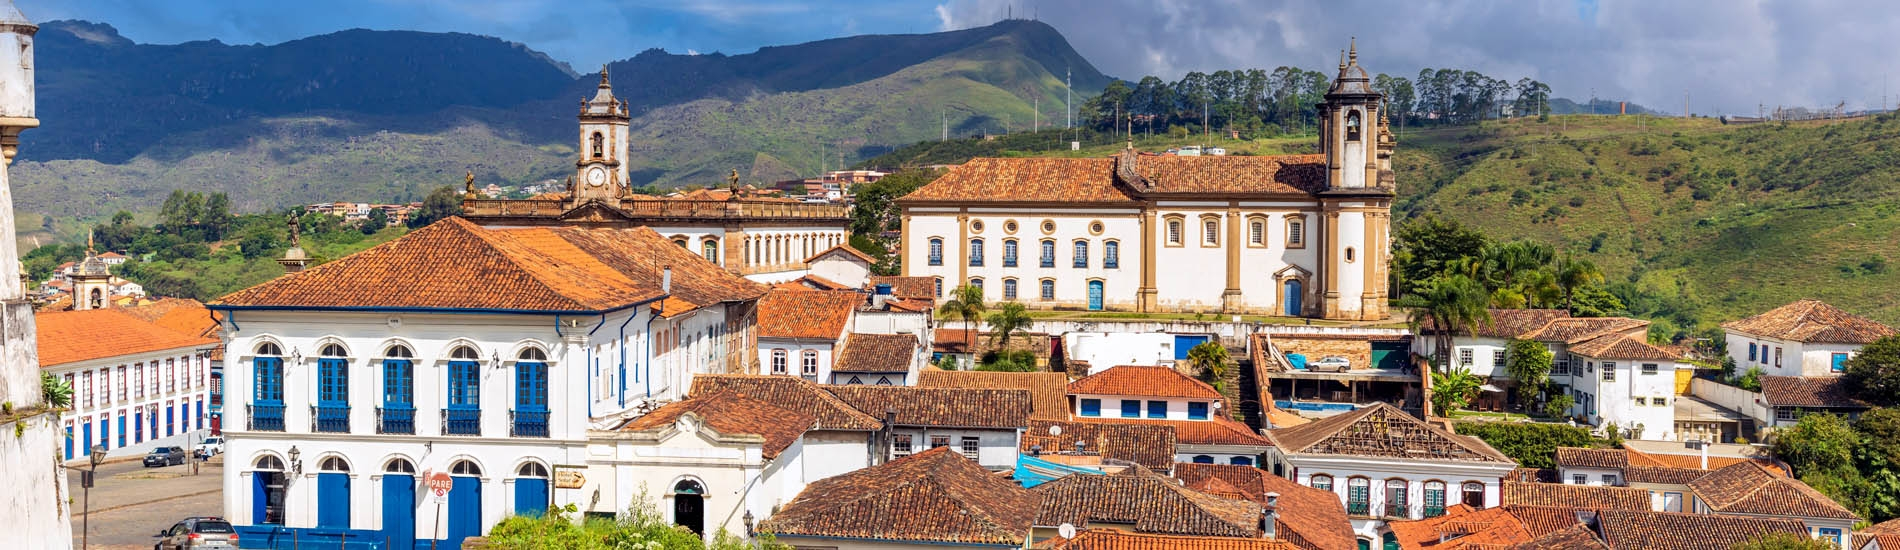 Ouro Preto city of Minas Gerais Brasil